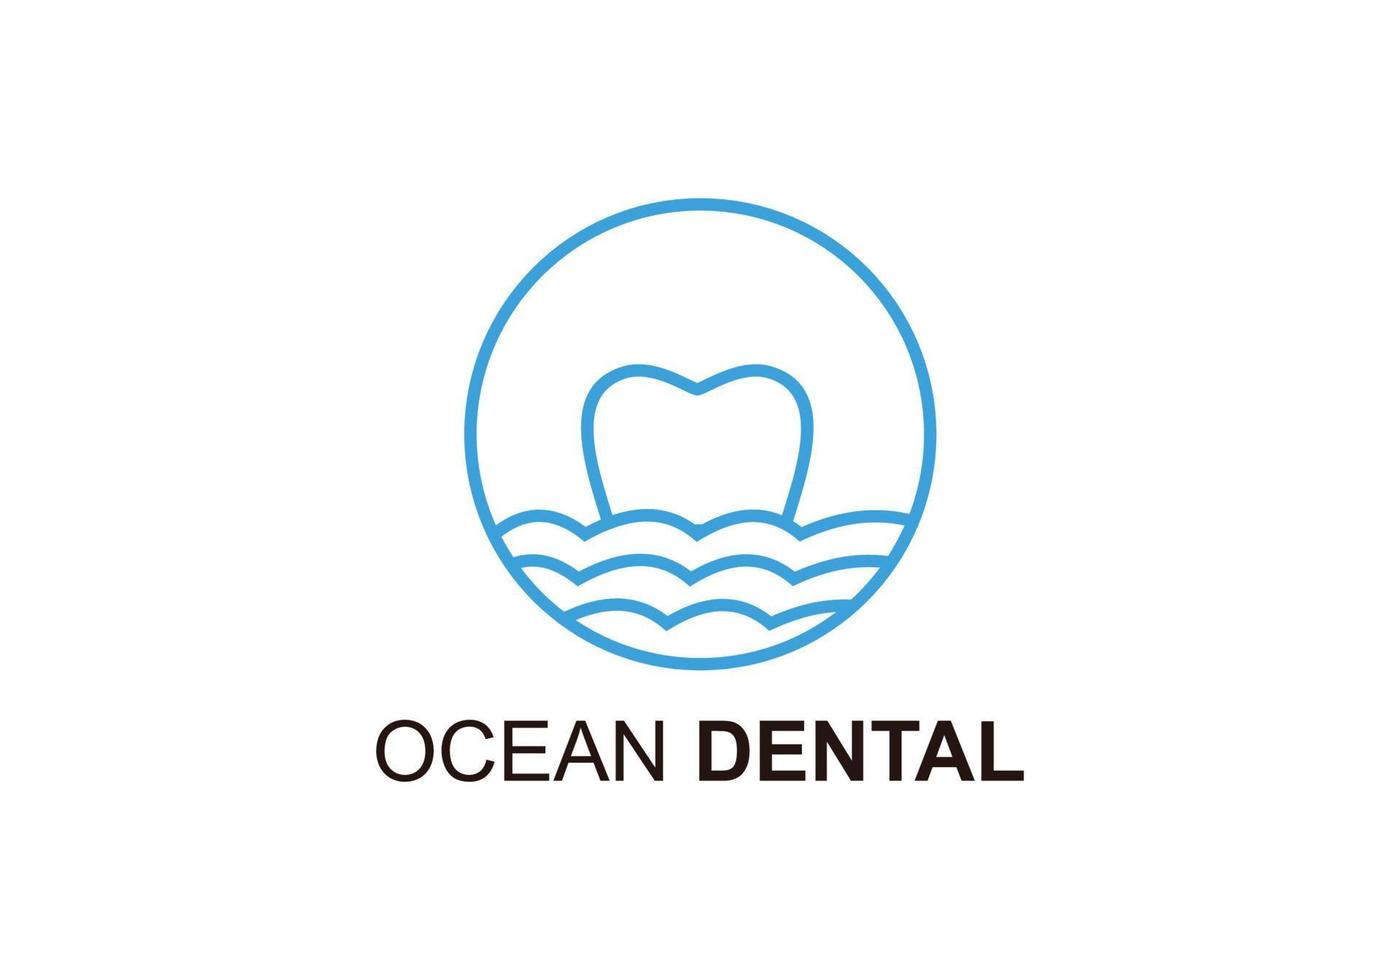 símbolo ícone ilustração da inspiração dental do oceano vetor